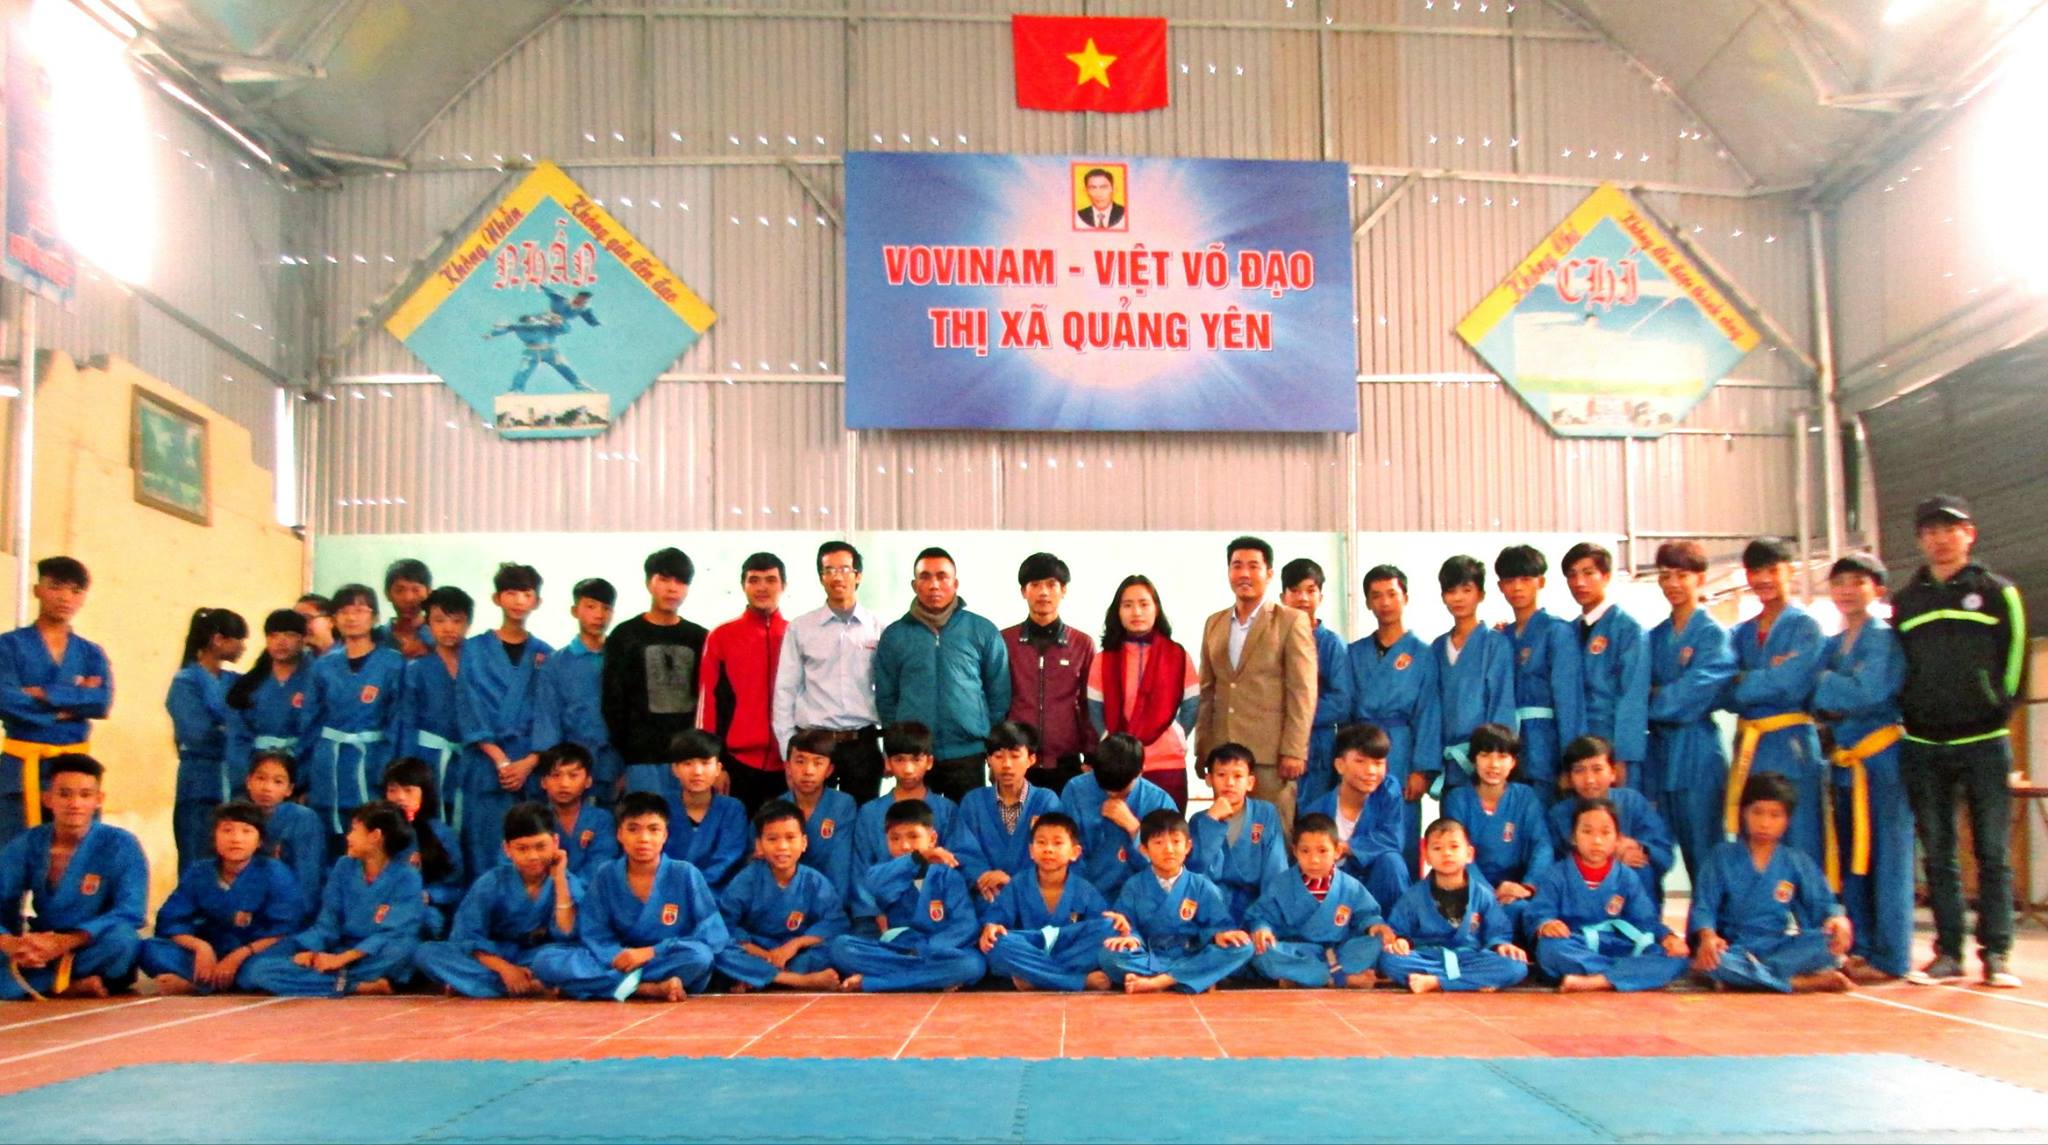 CLB Vovinam Thị Xã Quảng Yên, Quảng Ninh